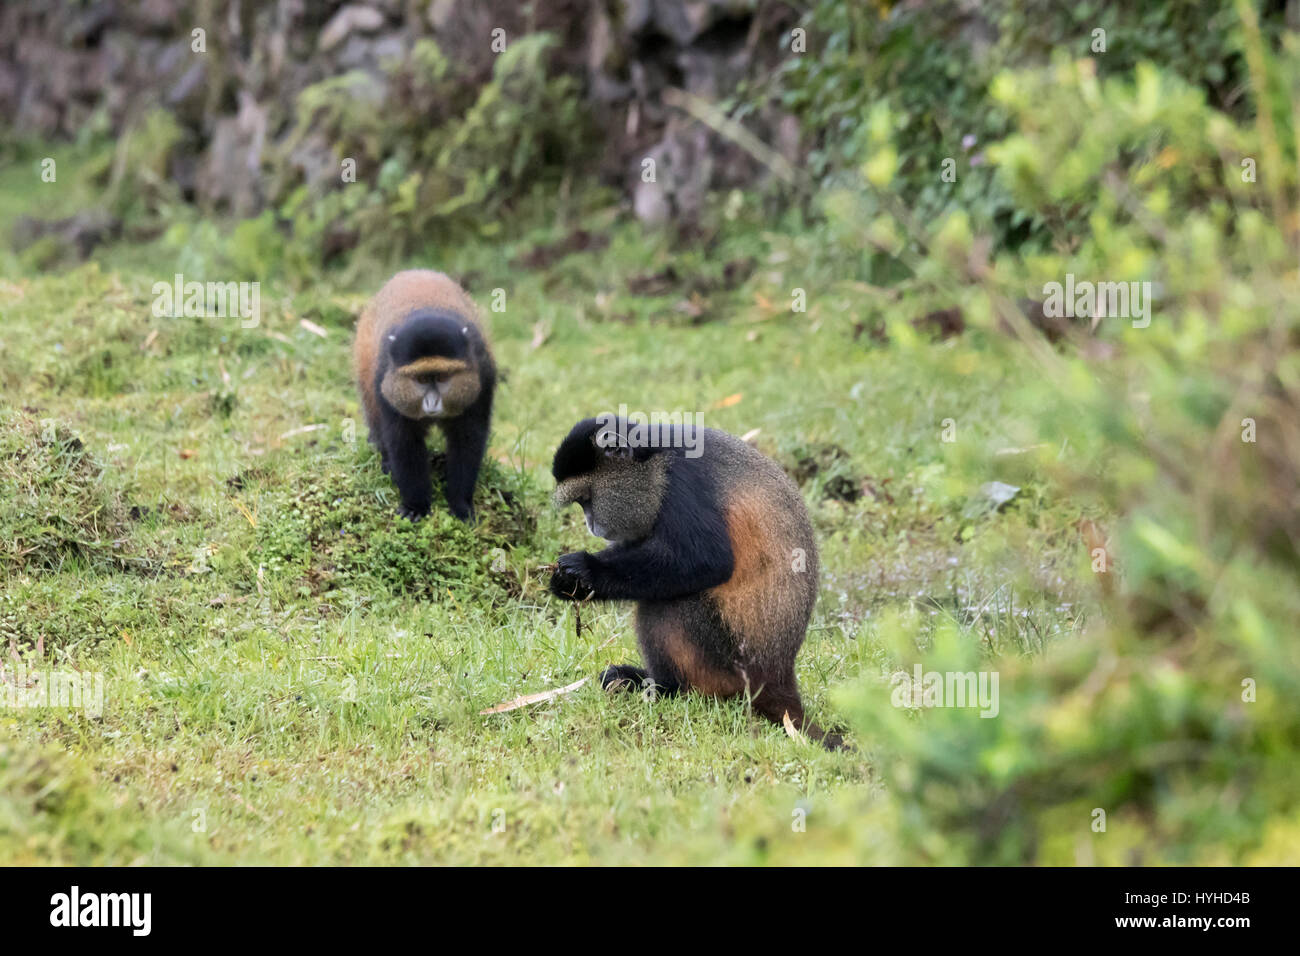 Endangered golden monkeys in Virunga forest of Volcanoes National Park, Rwanda. Stock Photo